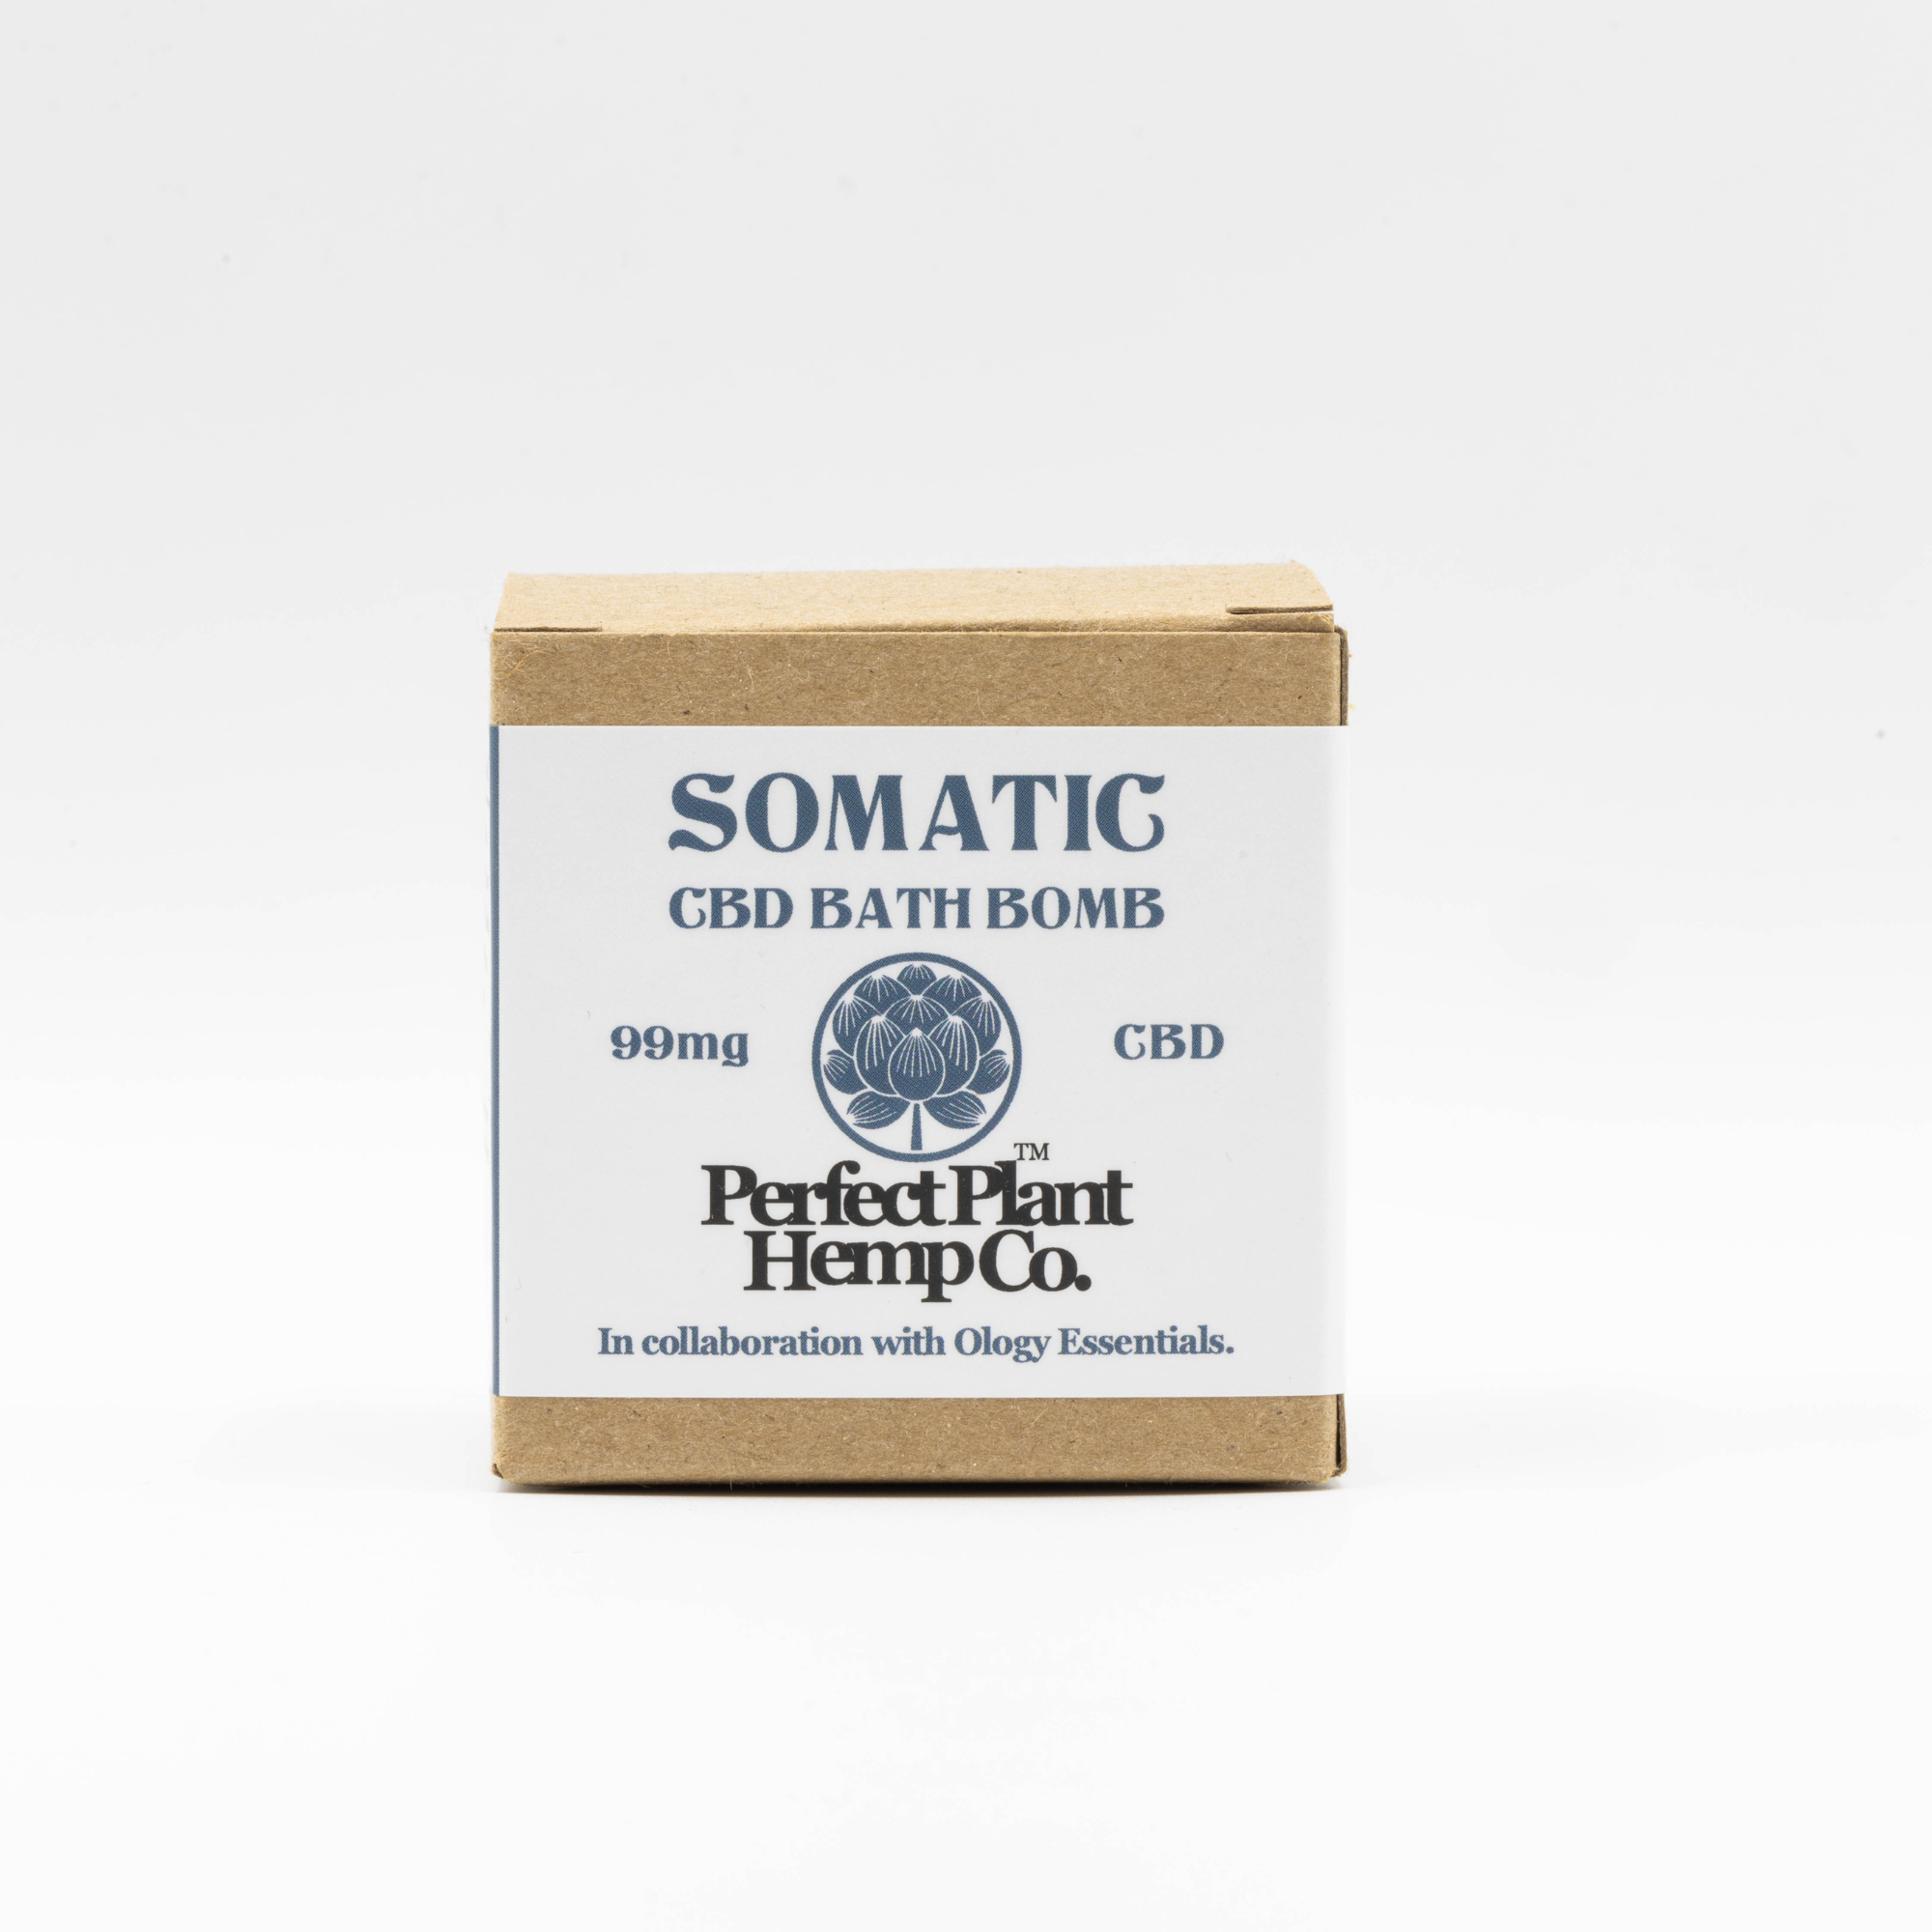 Somatic Bath Bomb (99mg)